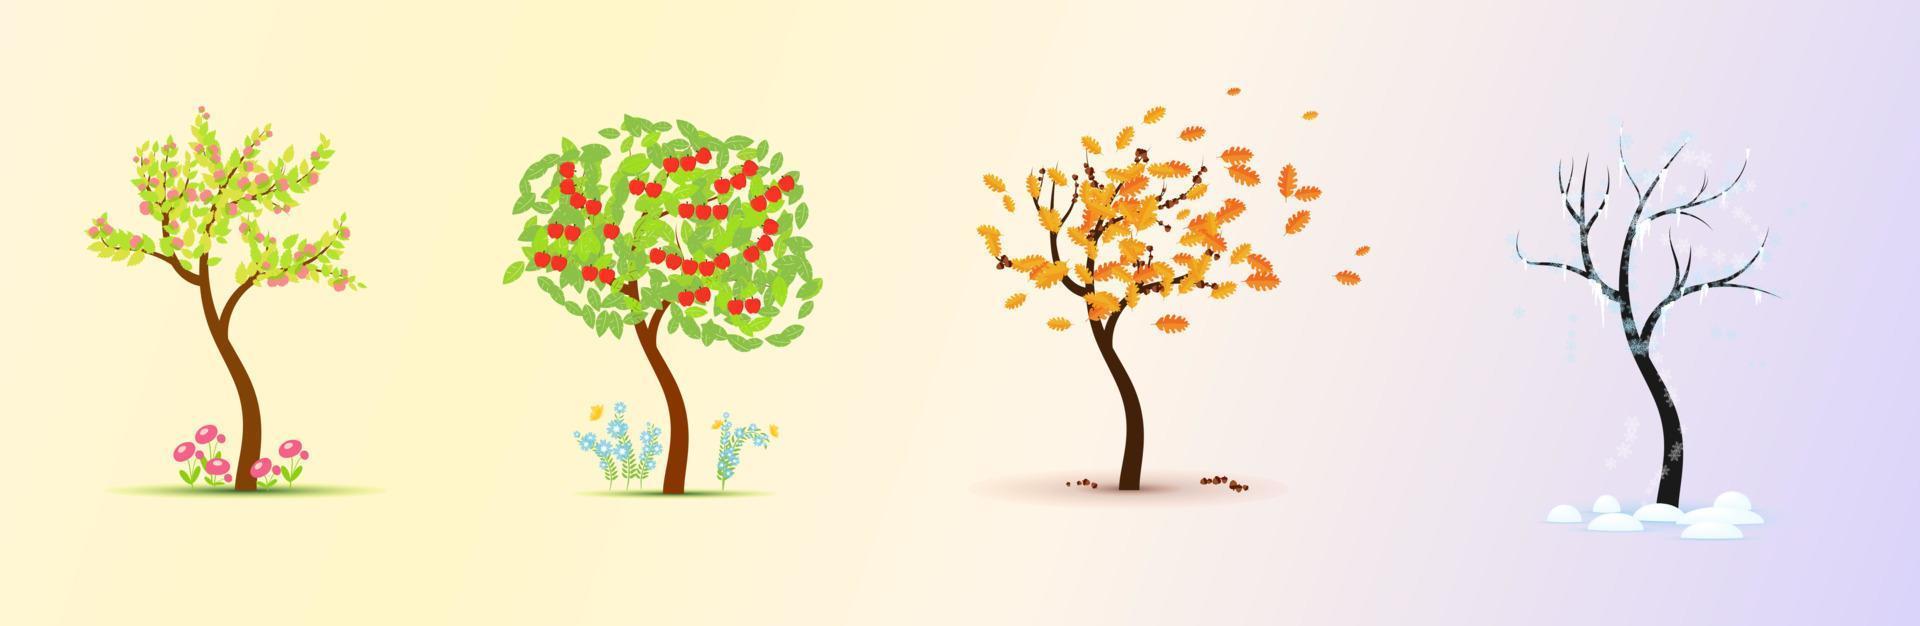 saisons. arbre en quatre étapes - printemps, été, automne, illustration vectorielle d'hiver vecteur